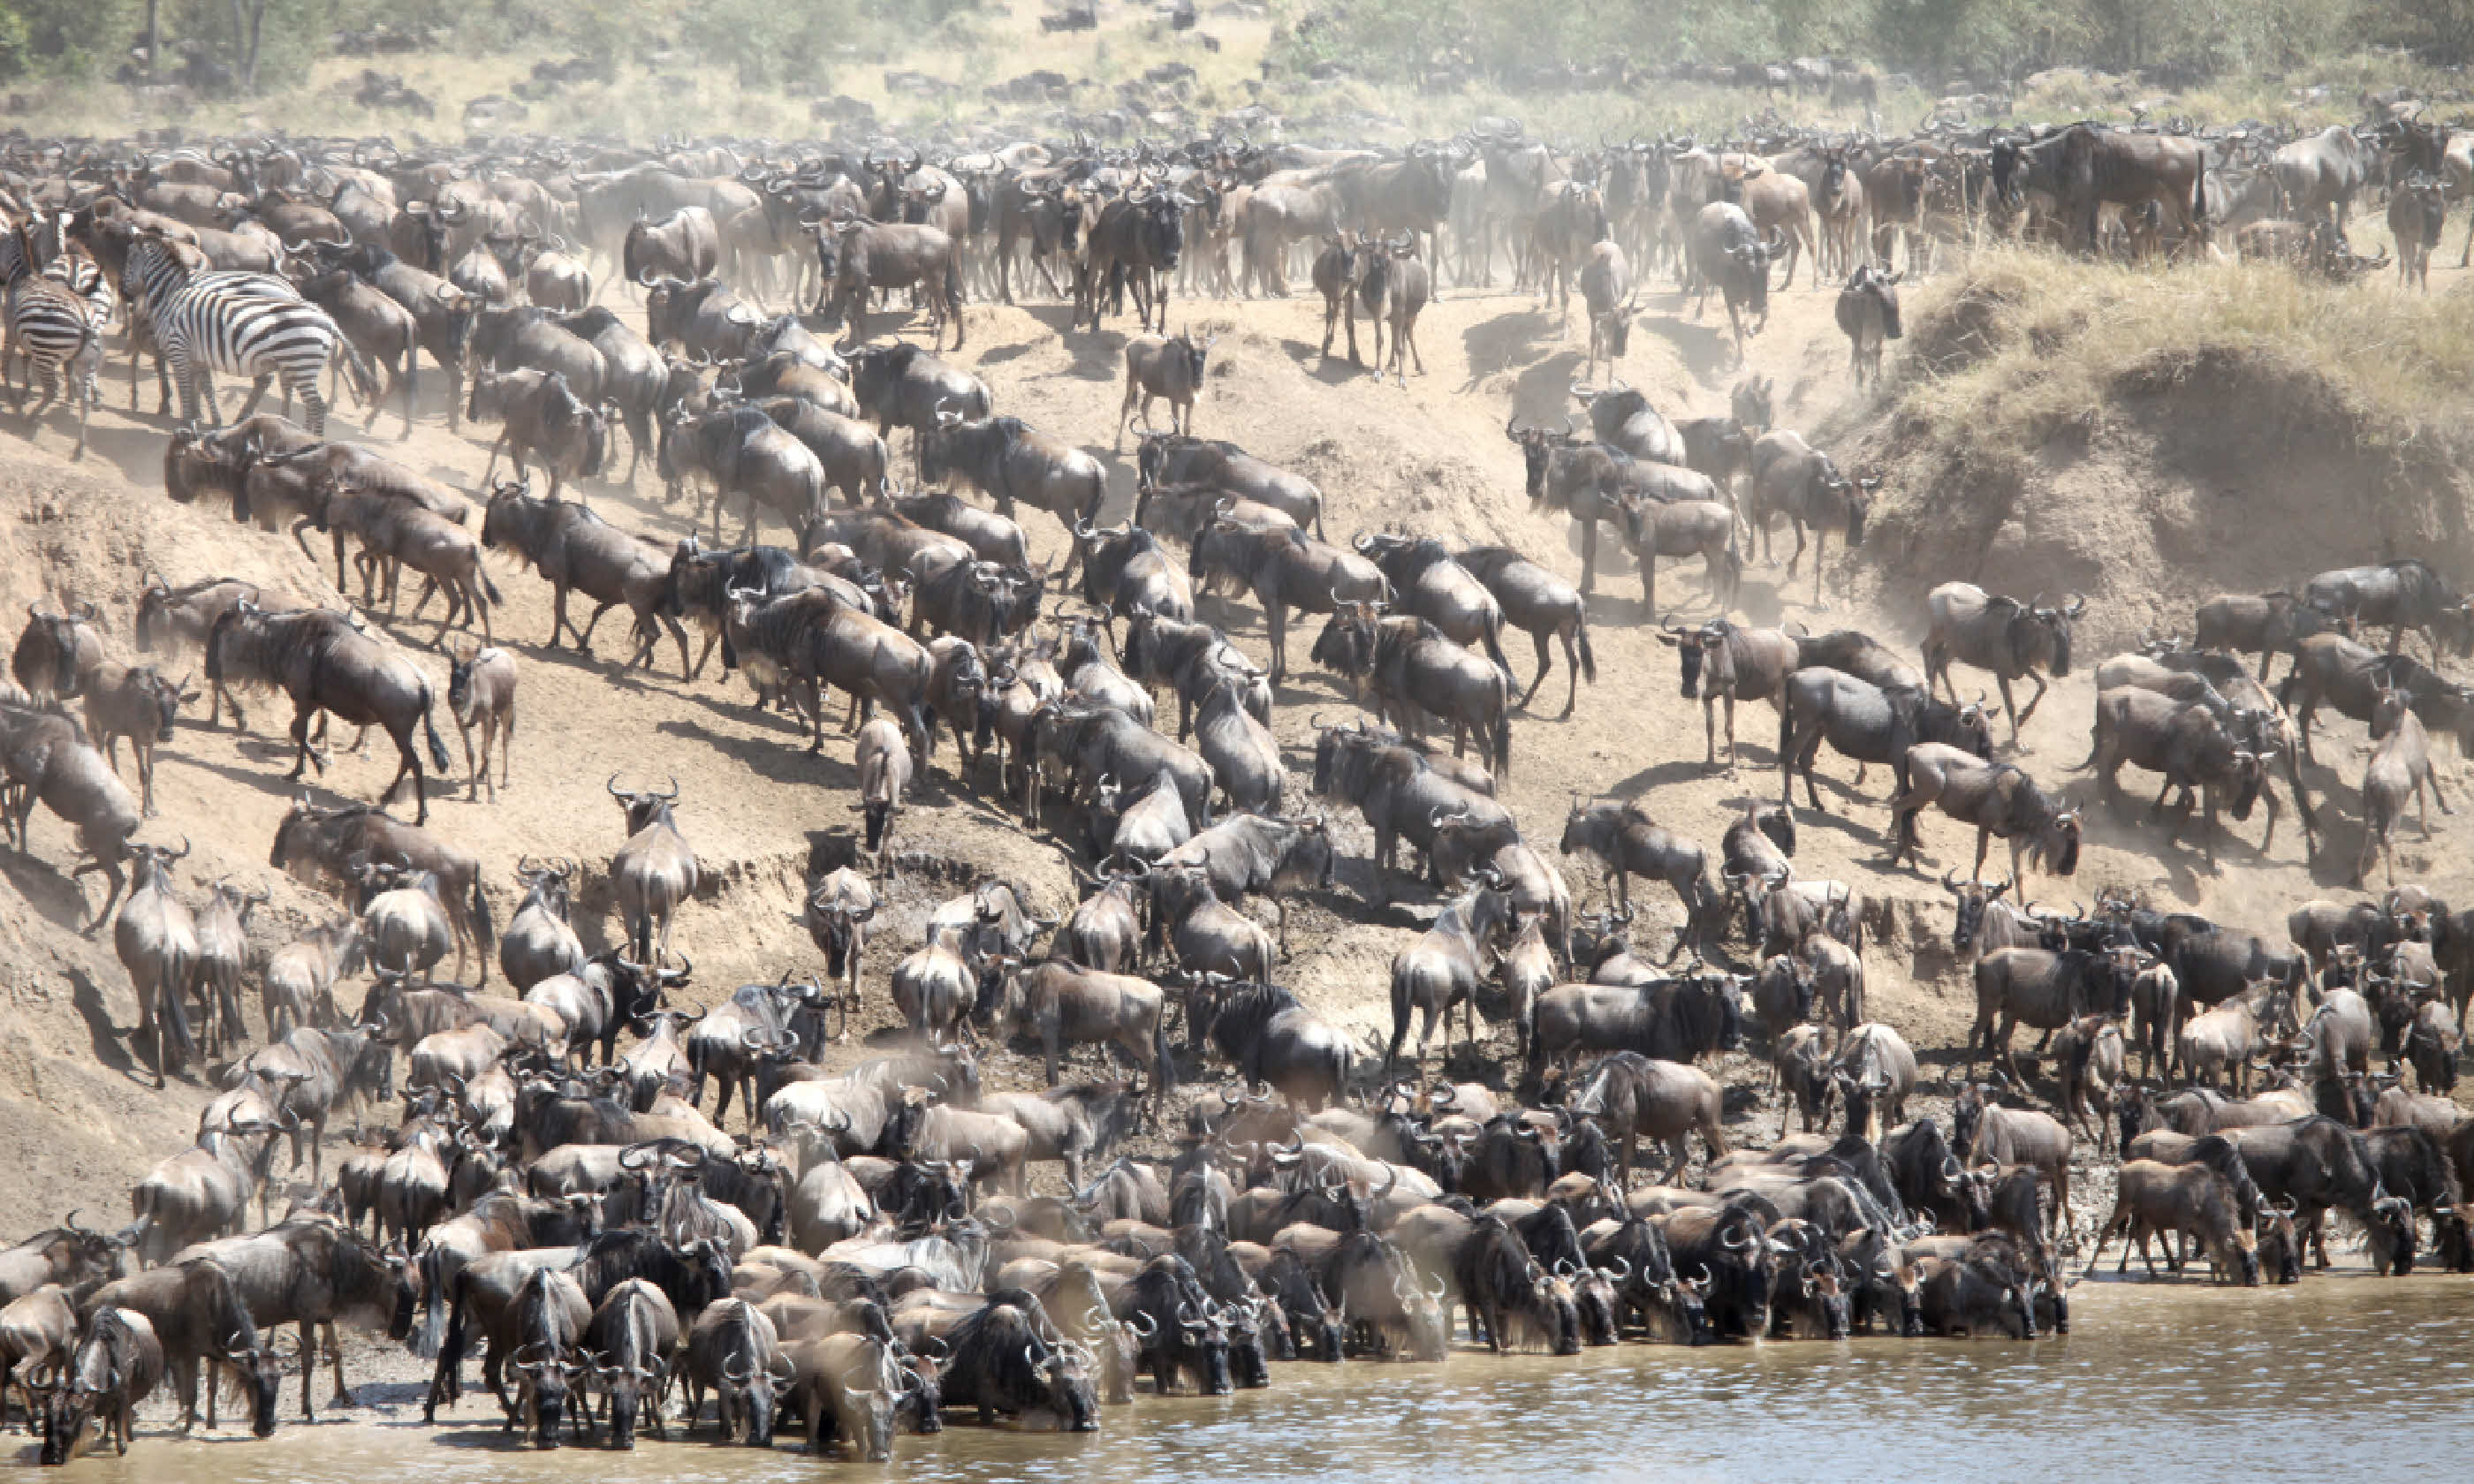 Wildebeest in the Masai Mara (Shutterstock)